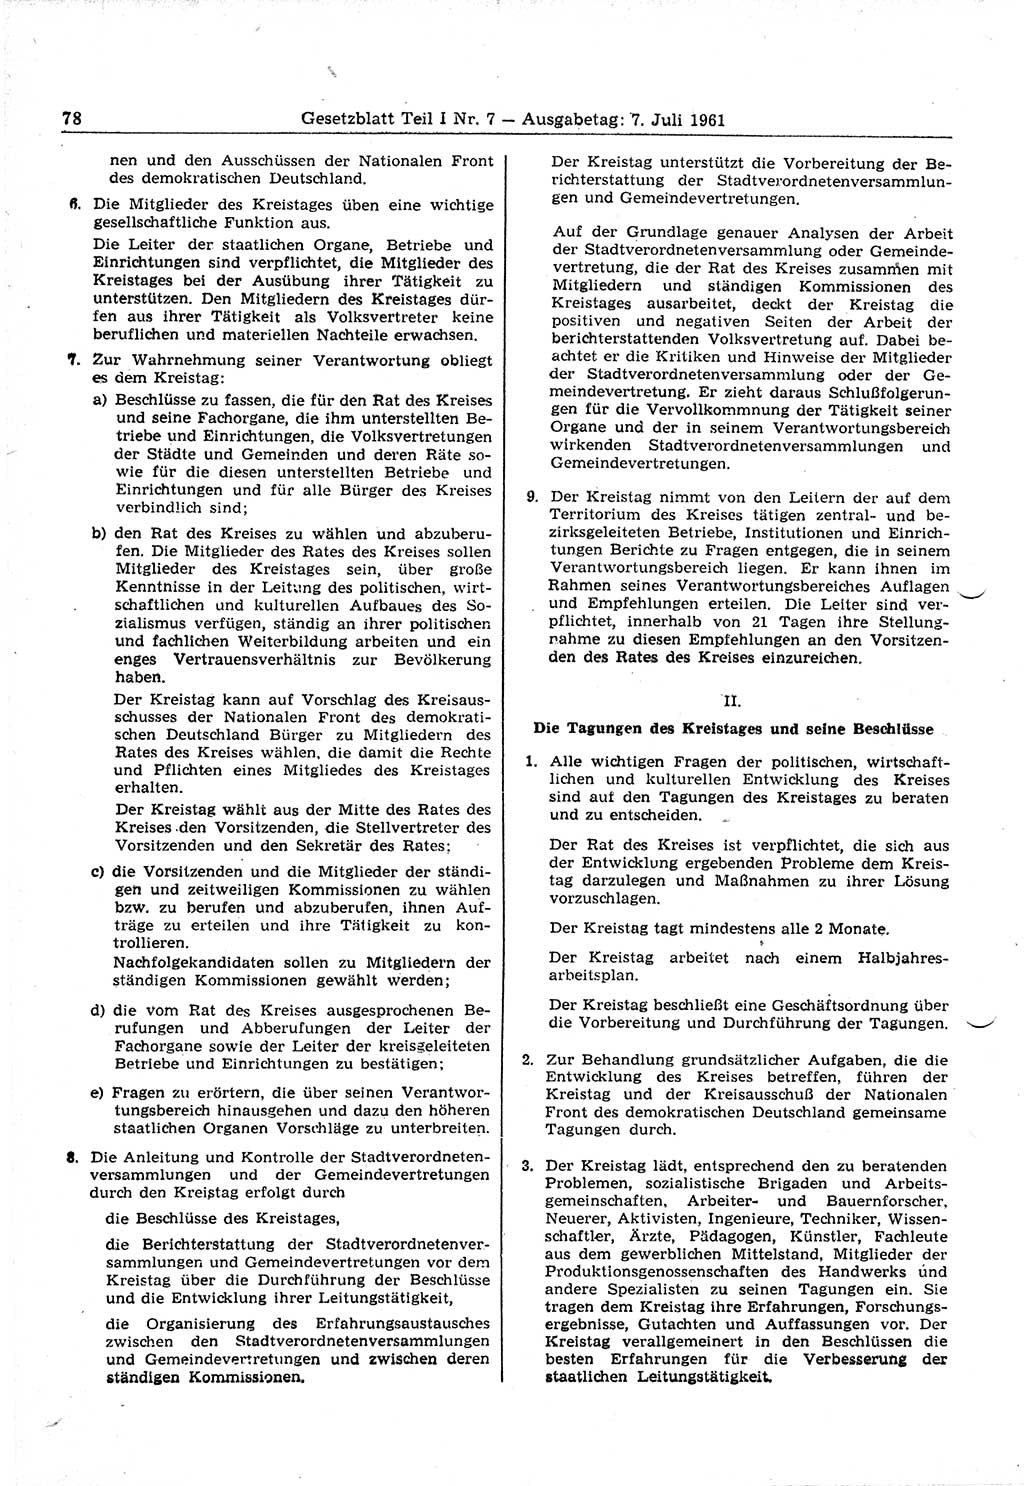 Gesetzblatt (GBl.) der Deutschen Demokratischen Republik (DDR) Teil Ⅰ 1961, Seite 78 (GBl. DDR Ⅰ 1961, S. 78)